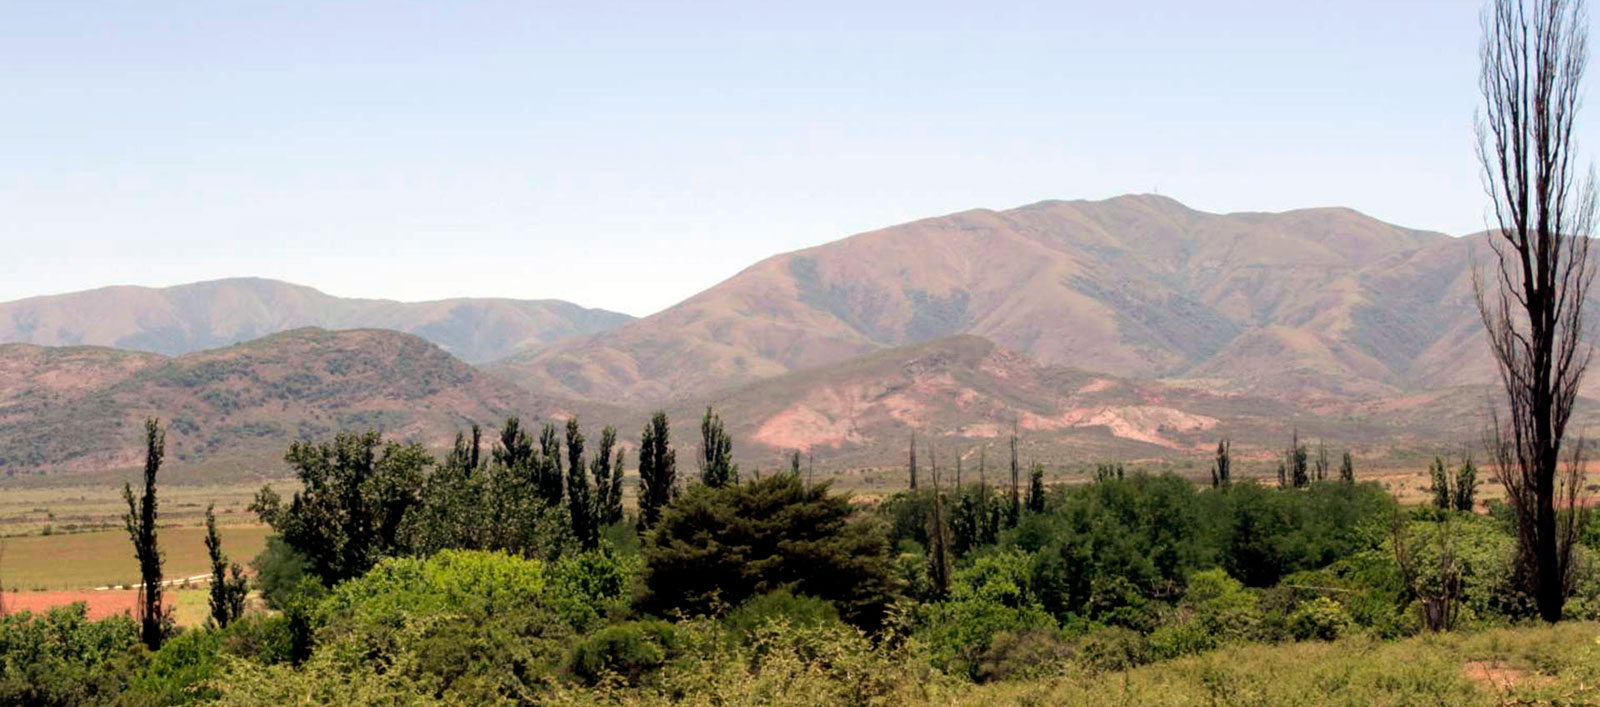 El Valle de Lerma - Norte de Argentina